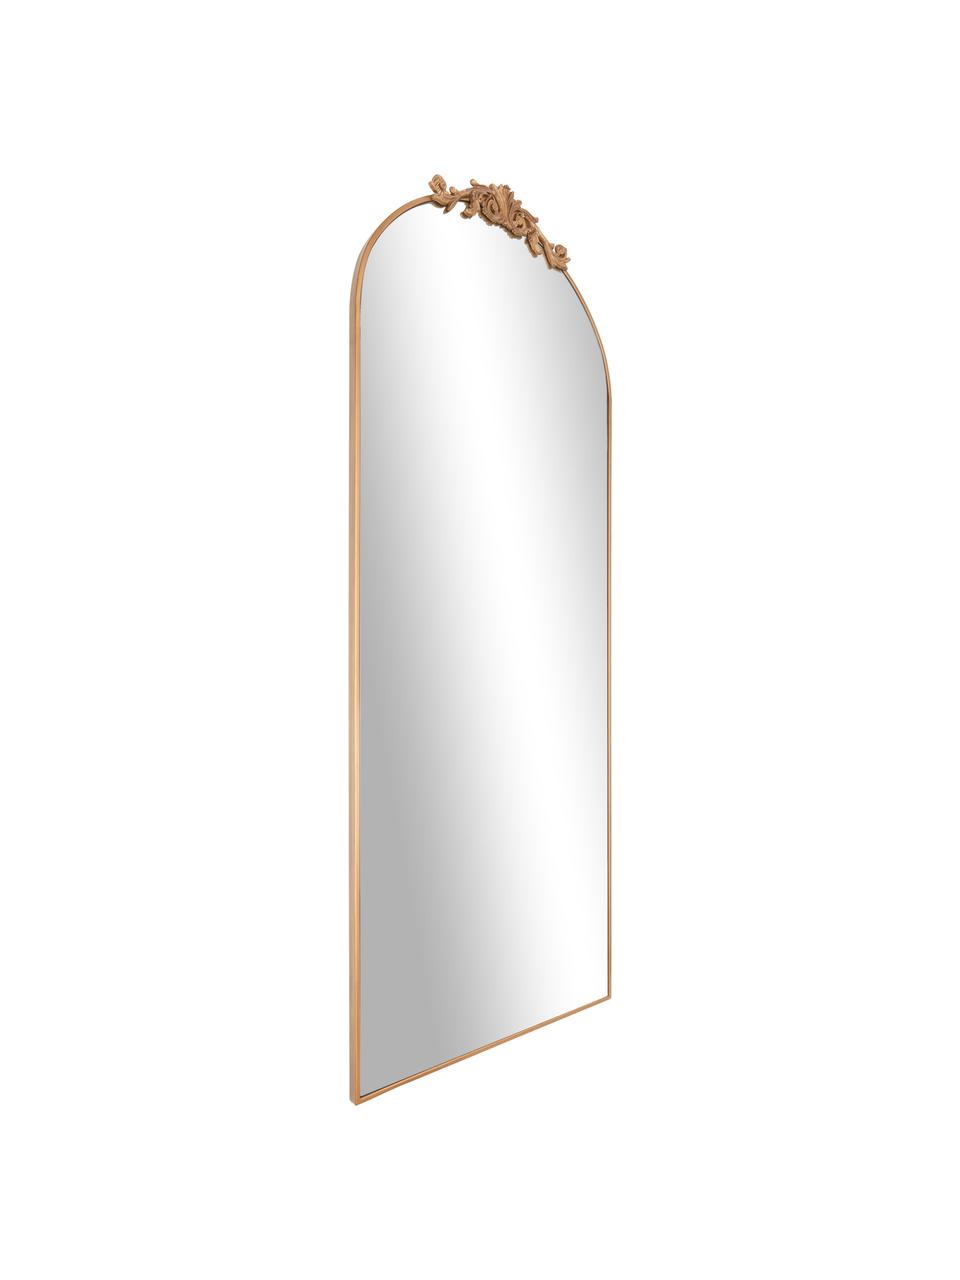 Specchio barocco pendente con cornice in metallo dorato Saida, Cornice: metallo rivestito, Superficie dello specchio: lastra di vetro, Dorato, Larg. 65 x Alt. 169 cm